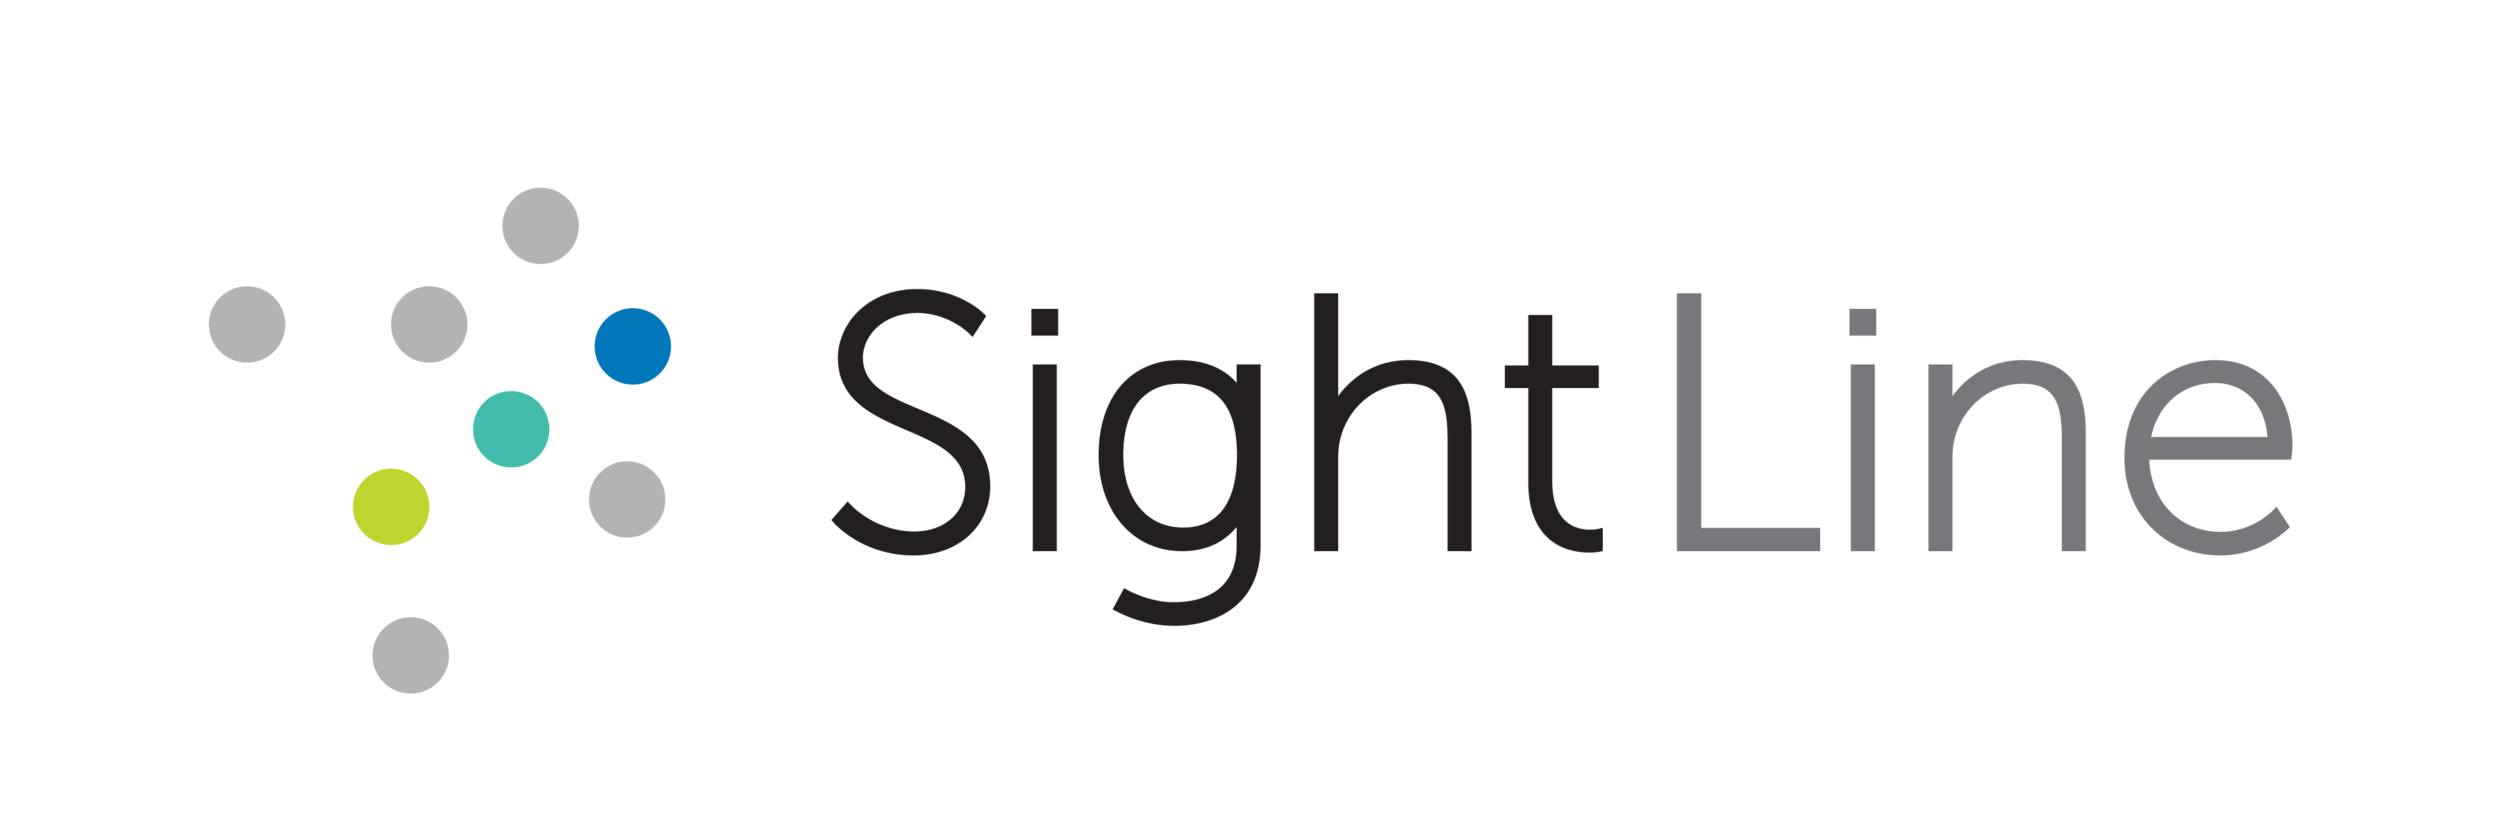 SightLine_logo_RGB.png